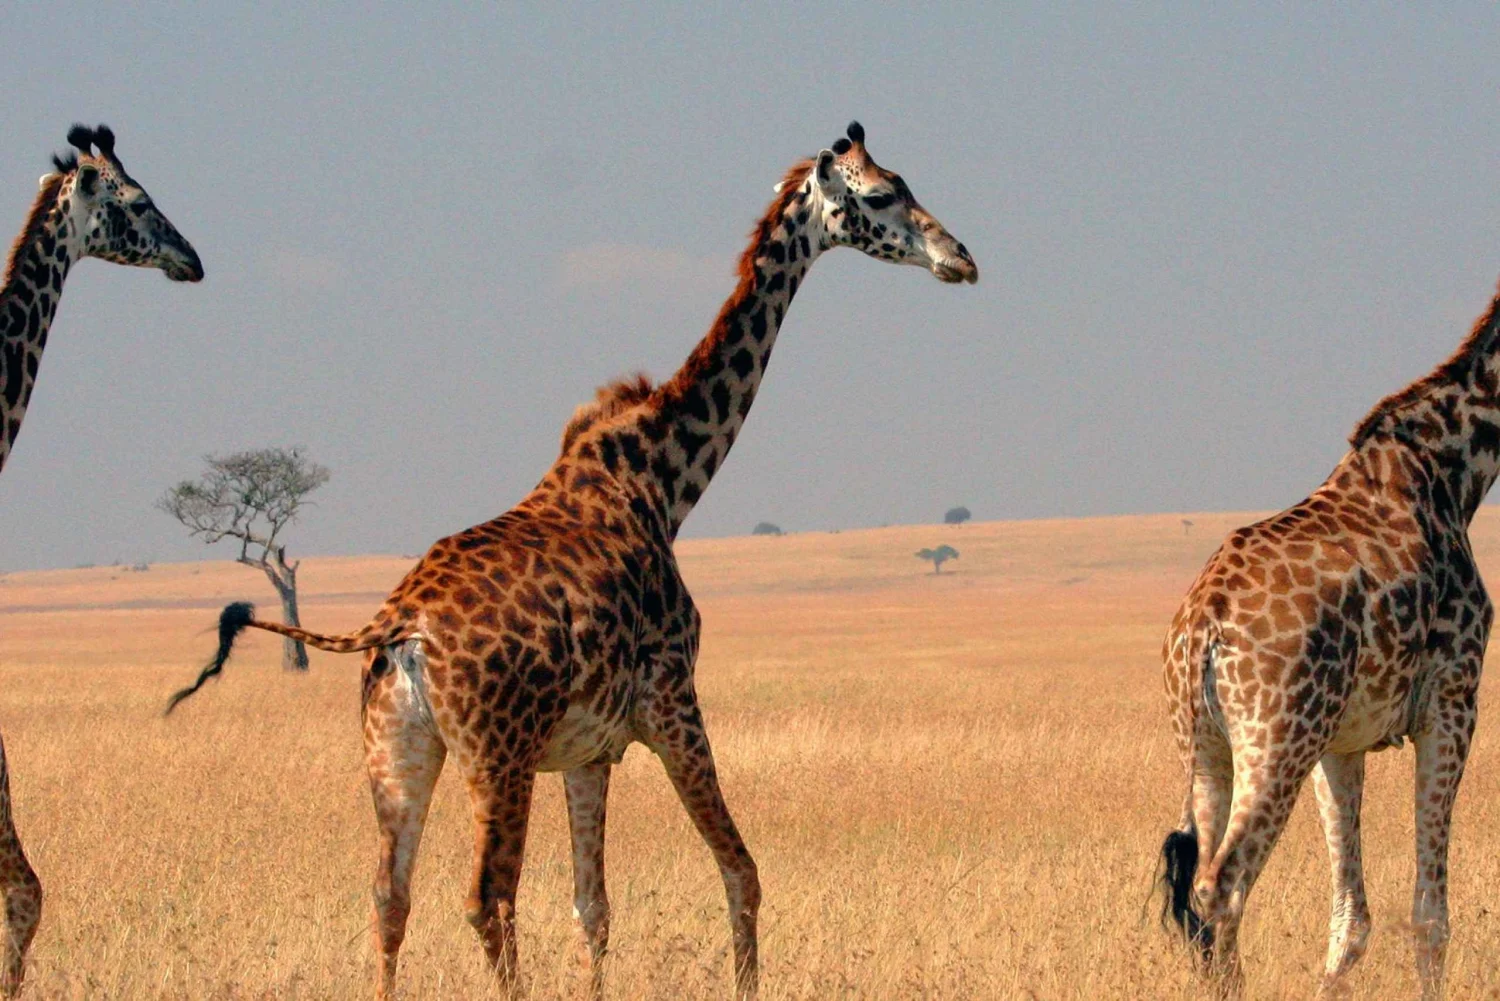 Tanzania Wildlife Safari - Private Budget3